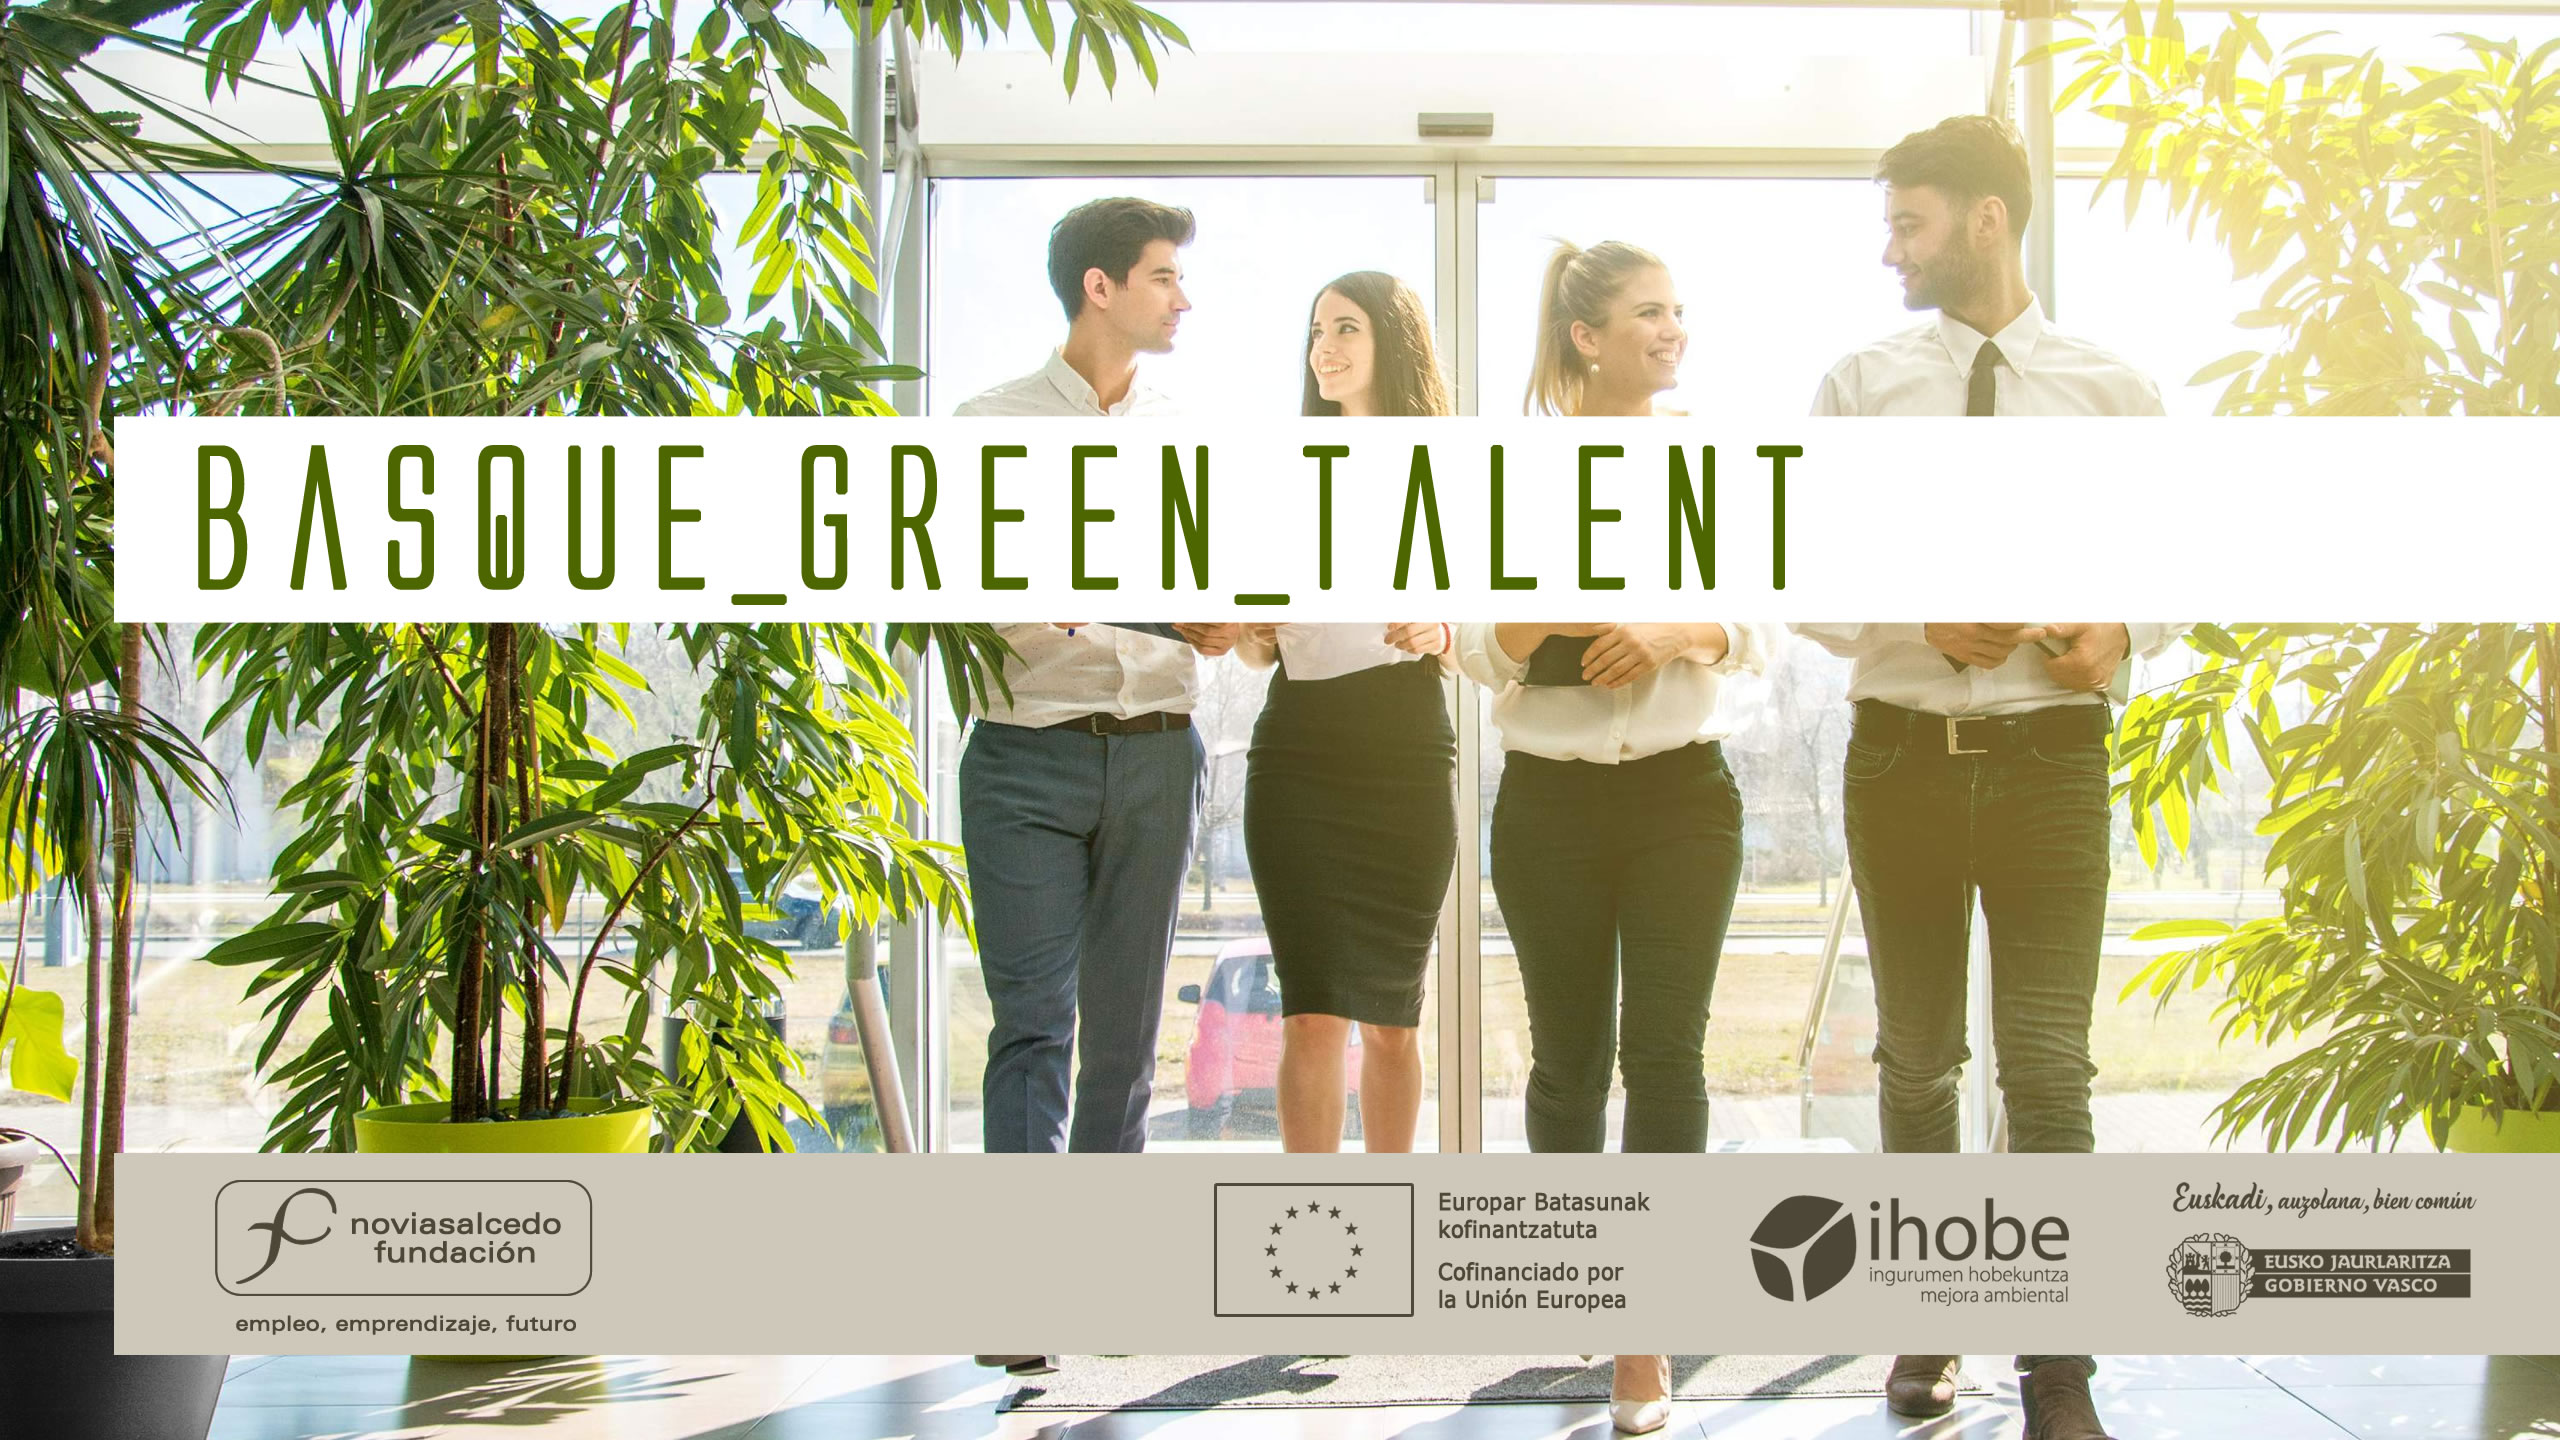 Basque Green Talent. Programa de formación y prácticas de Fundación Novia Salcedo, Ihobe, Cofinanciado por la Unión Europea, Eusko Jaurlaritza Gobierno Vasco